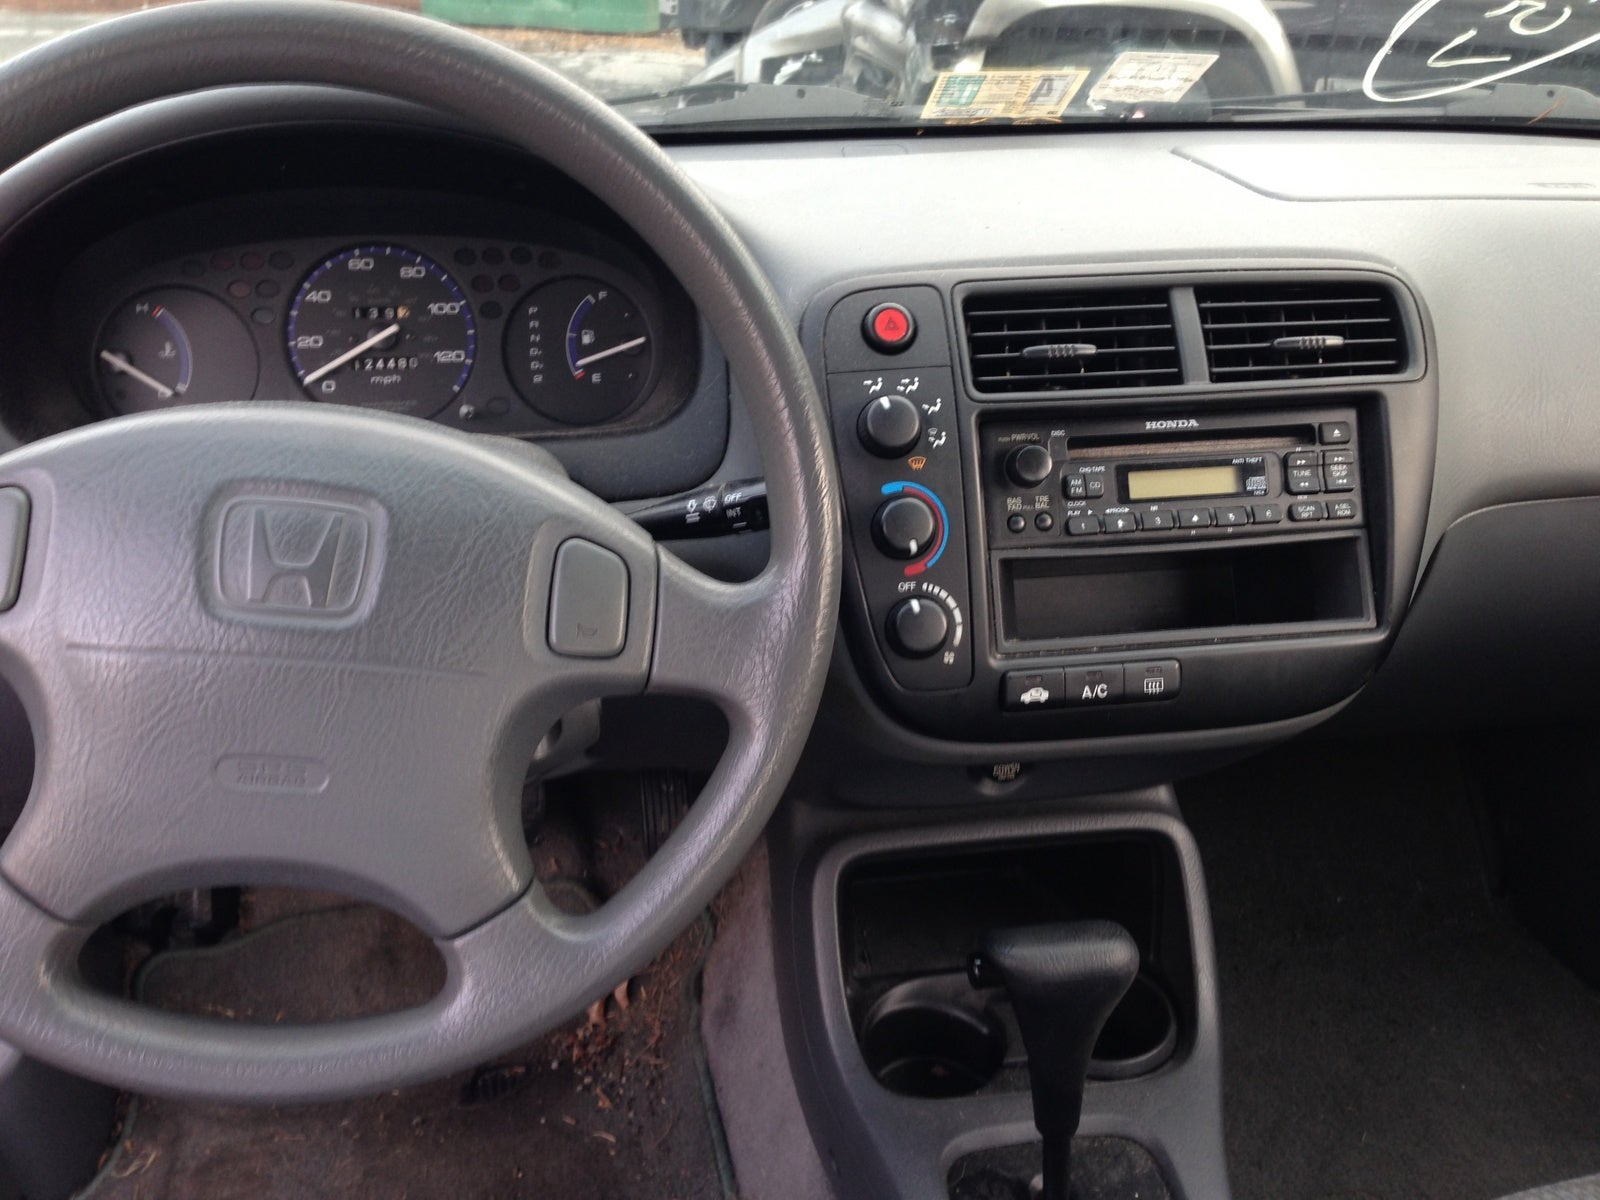 2000 Honda Civic - Pictures - CarGurus
 Honda Civic 2000 Modified Interior